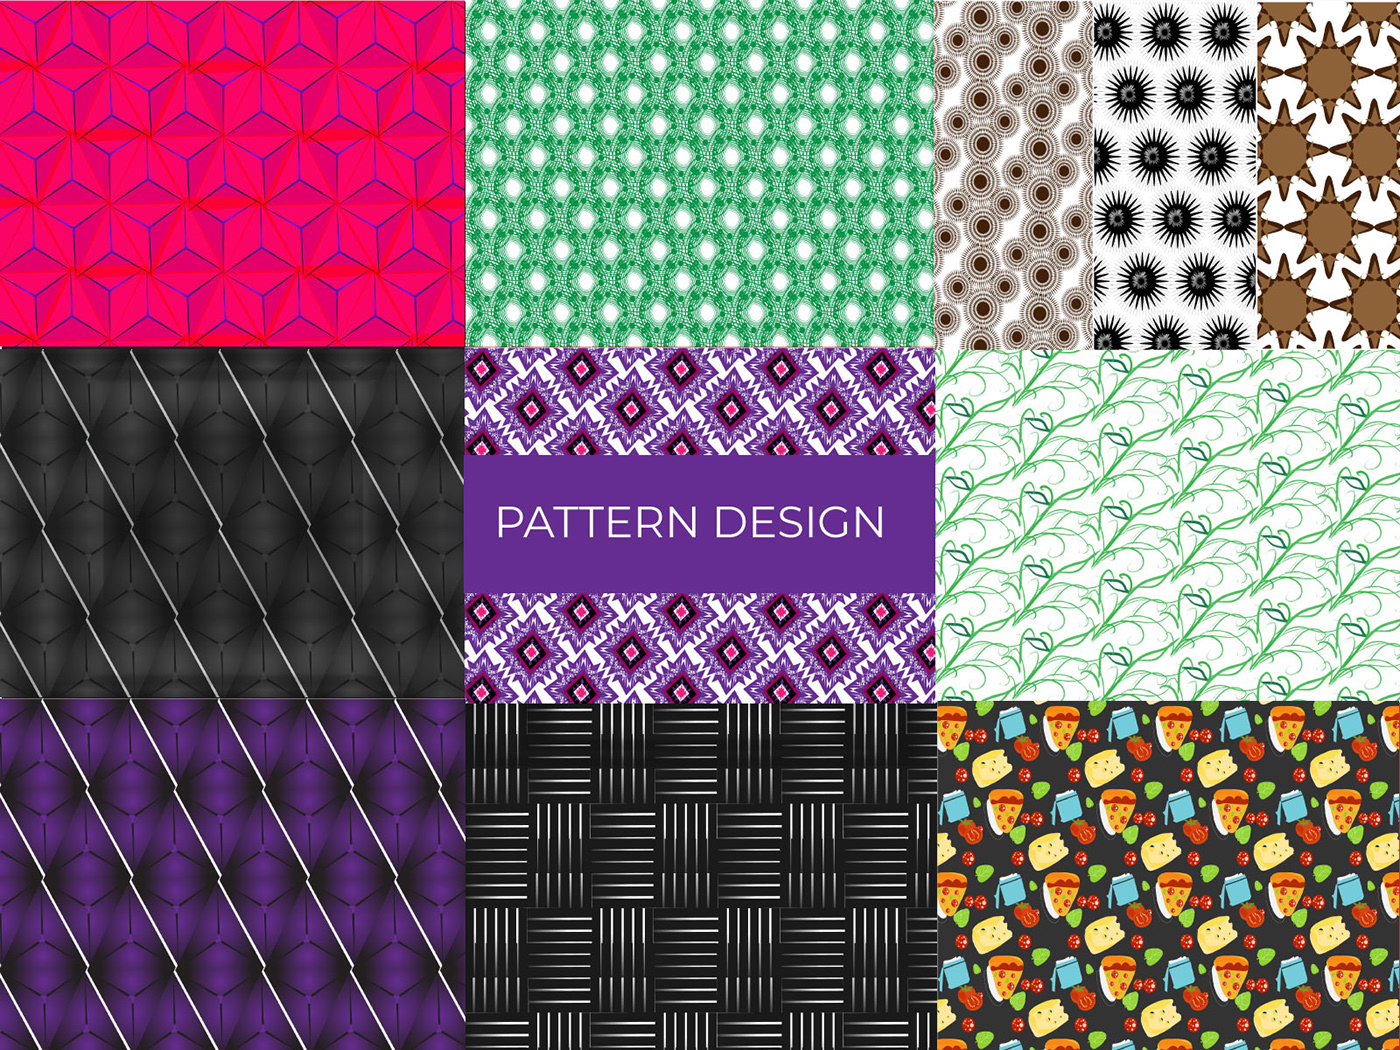 pattern set background patterns geometric pattern abstract pattern food pattern fabricdesign patterndesign floral bohopattern pattern collection